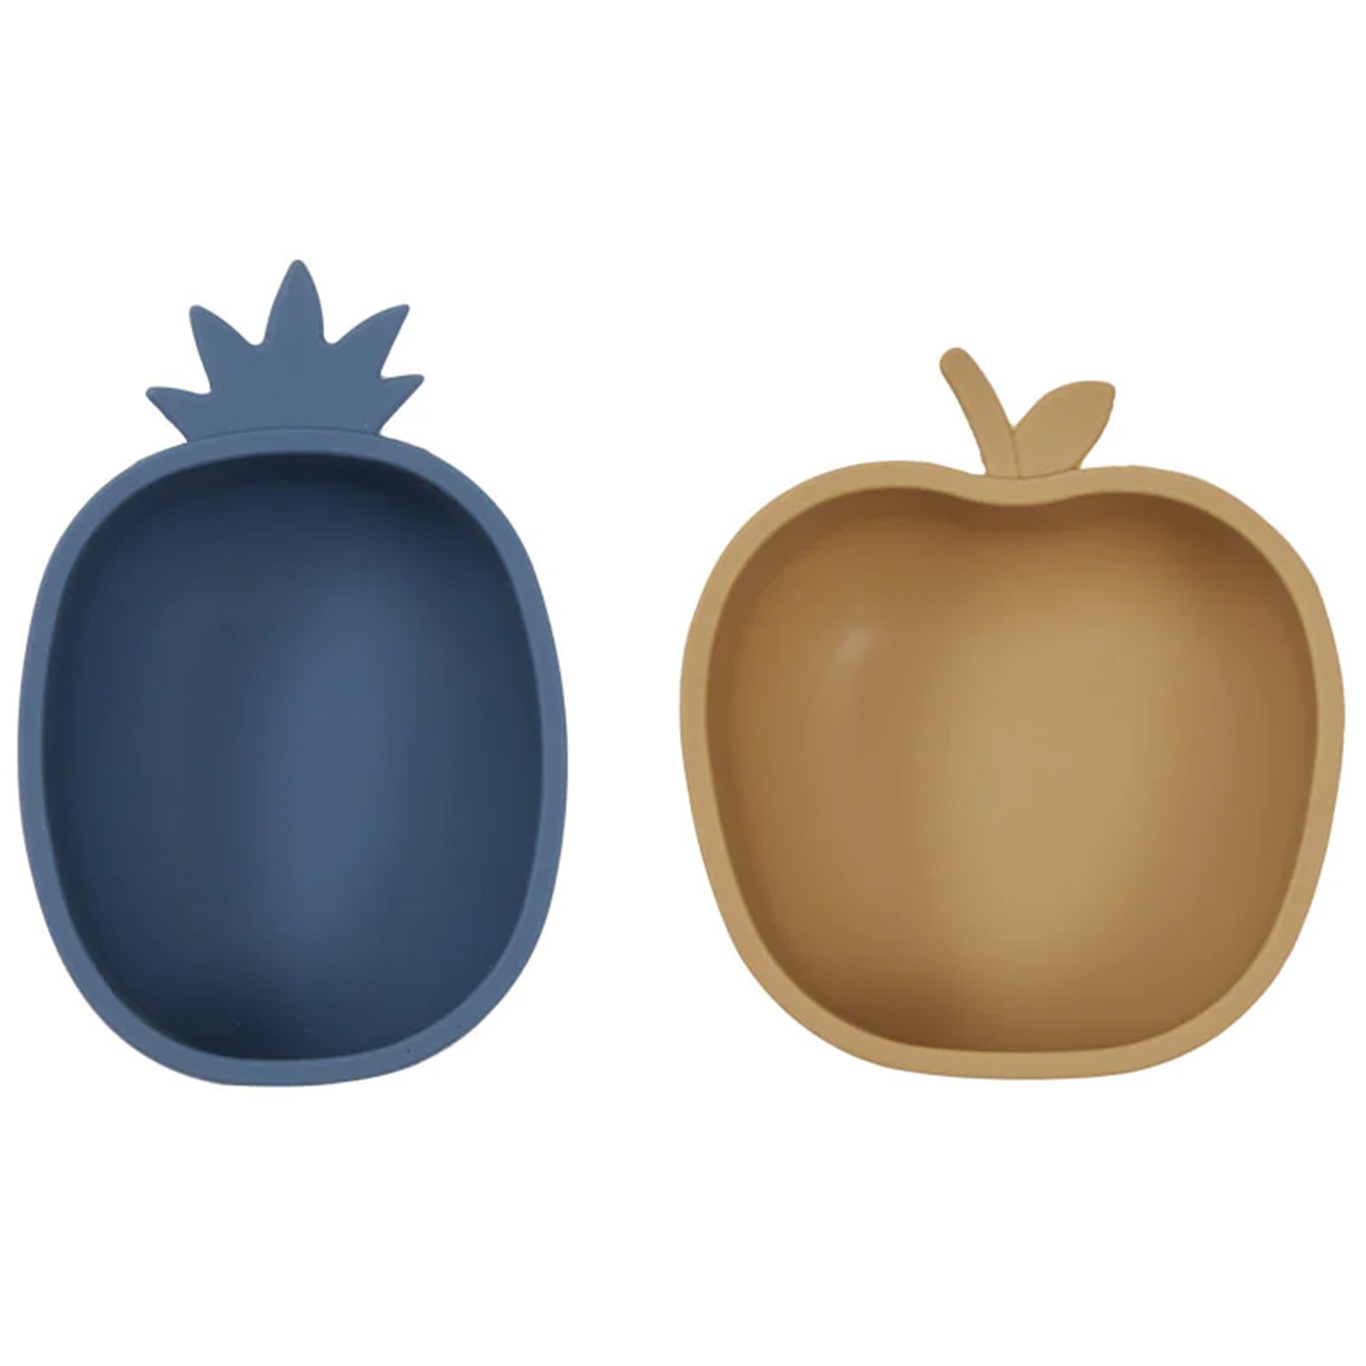 Pineapple & Apple Välipalakulho 2-pakkaus